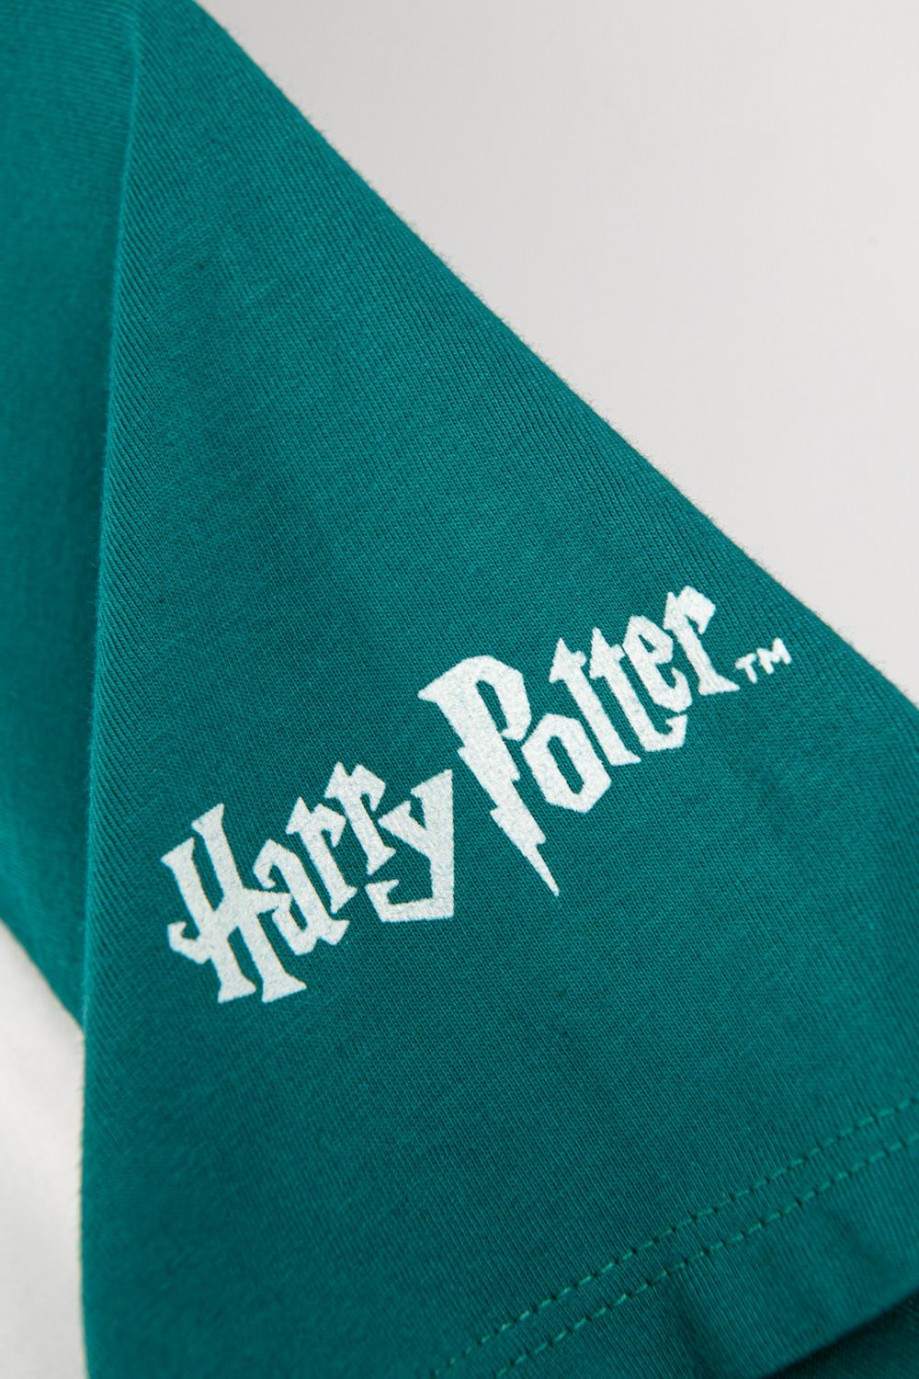 Camiseta manga ranglan corta estampado de Harry Potter.